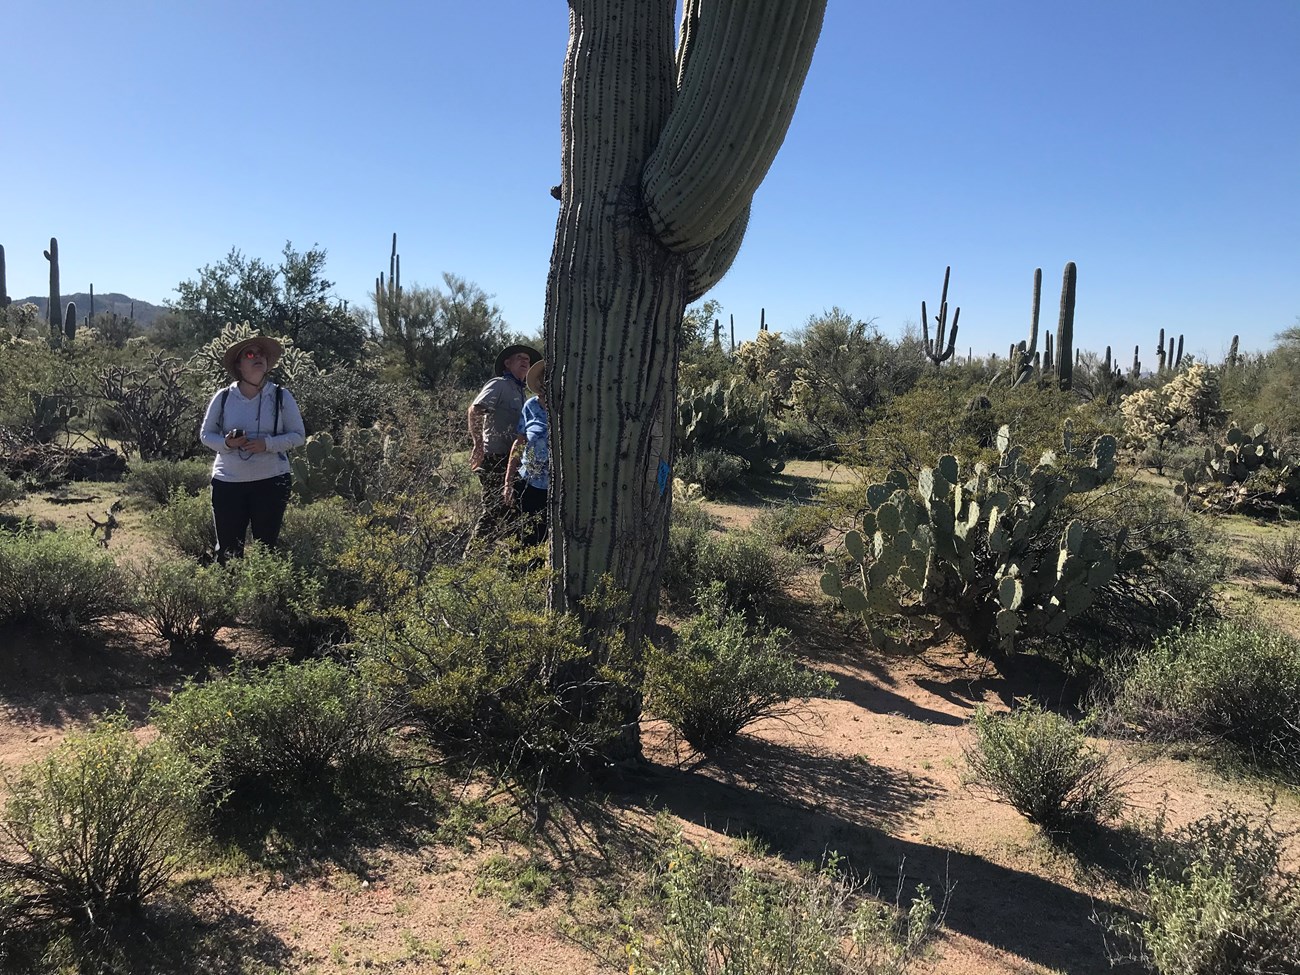 Volunteer gazes up at large saguaro